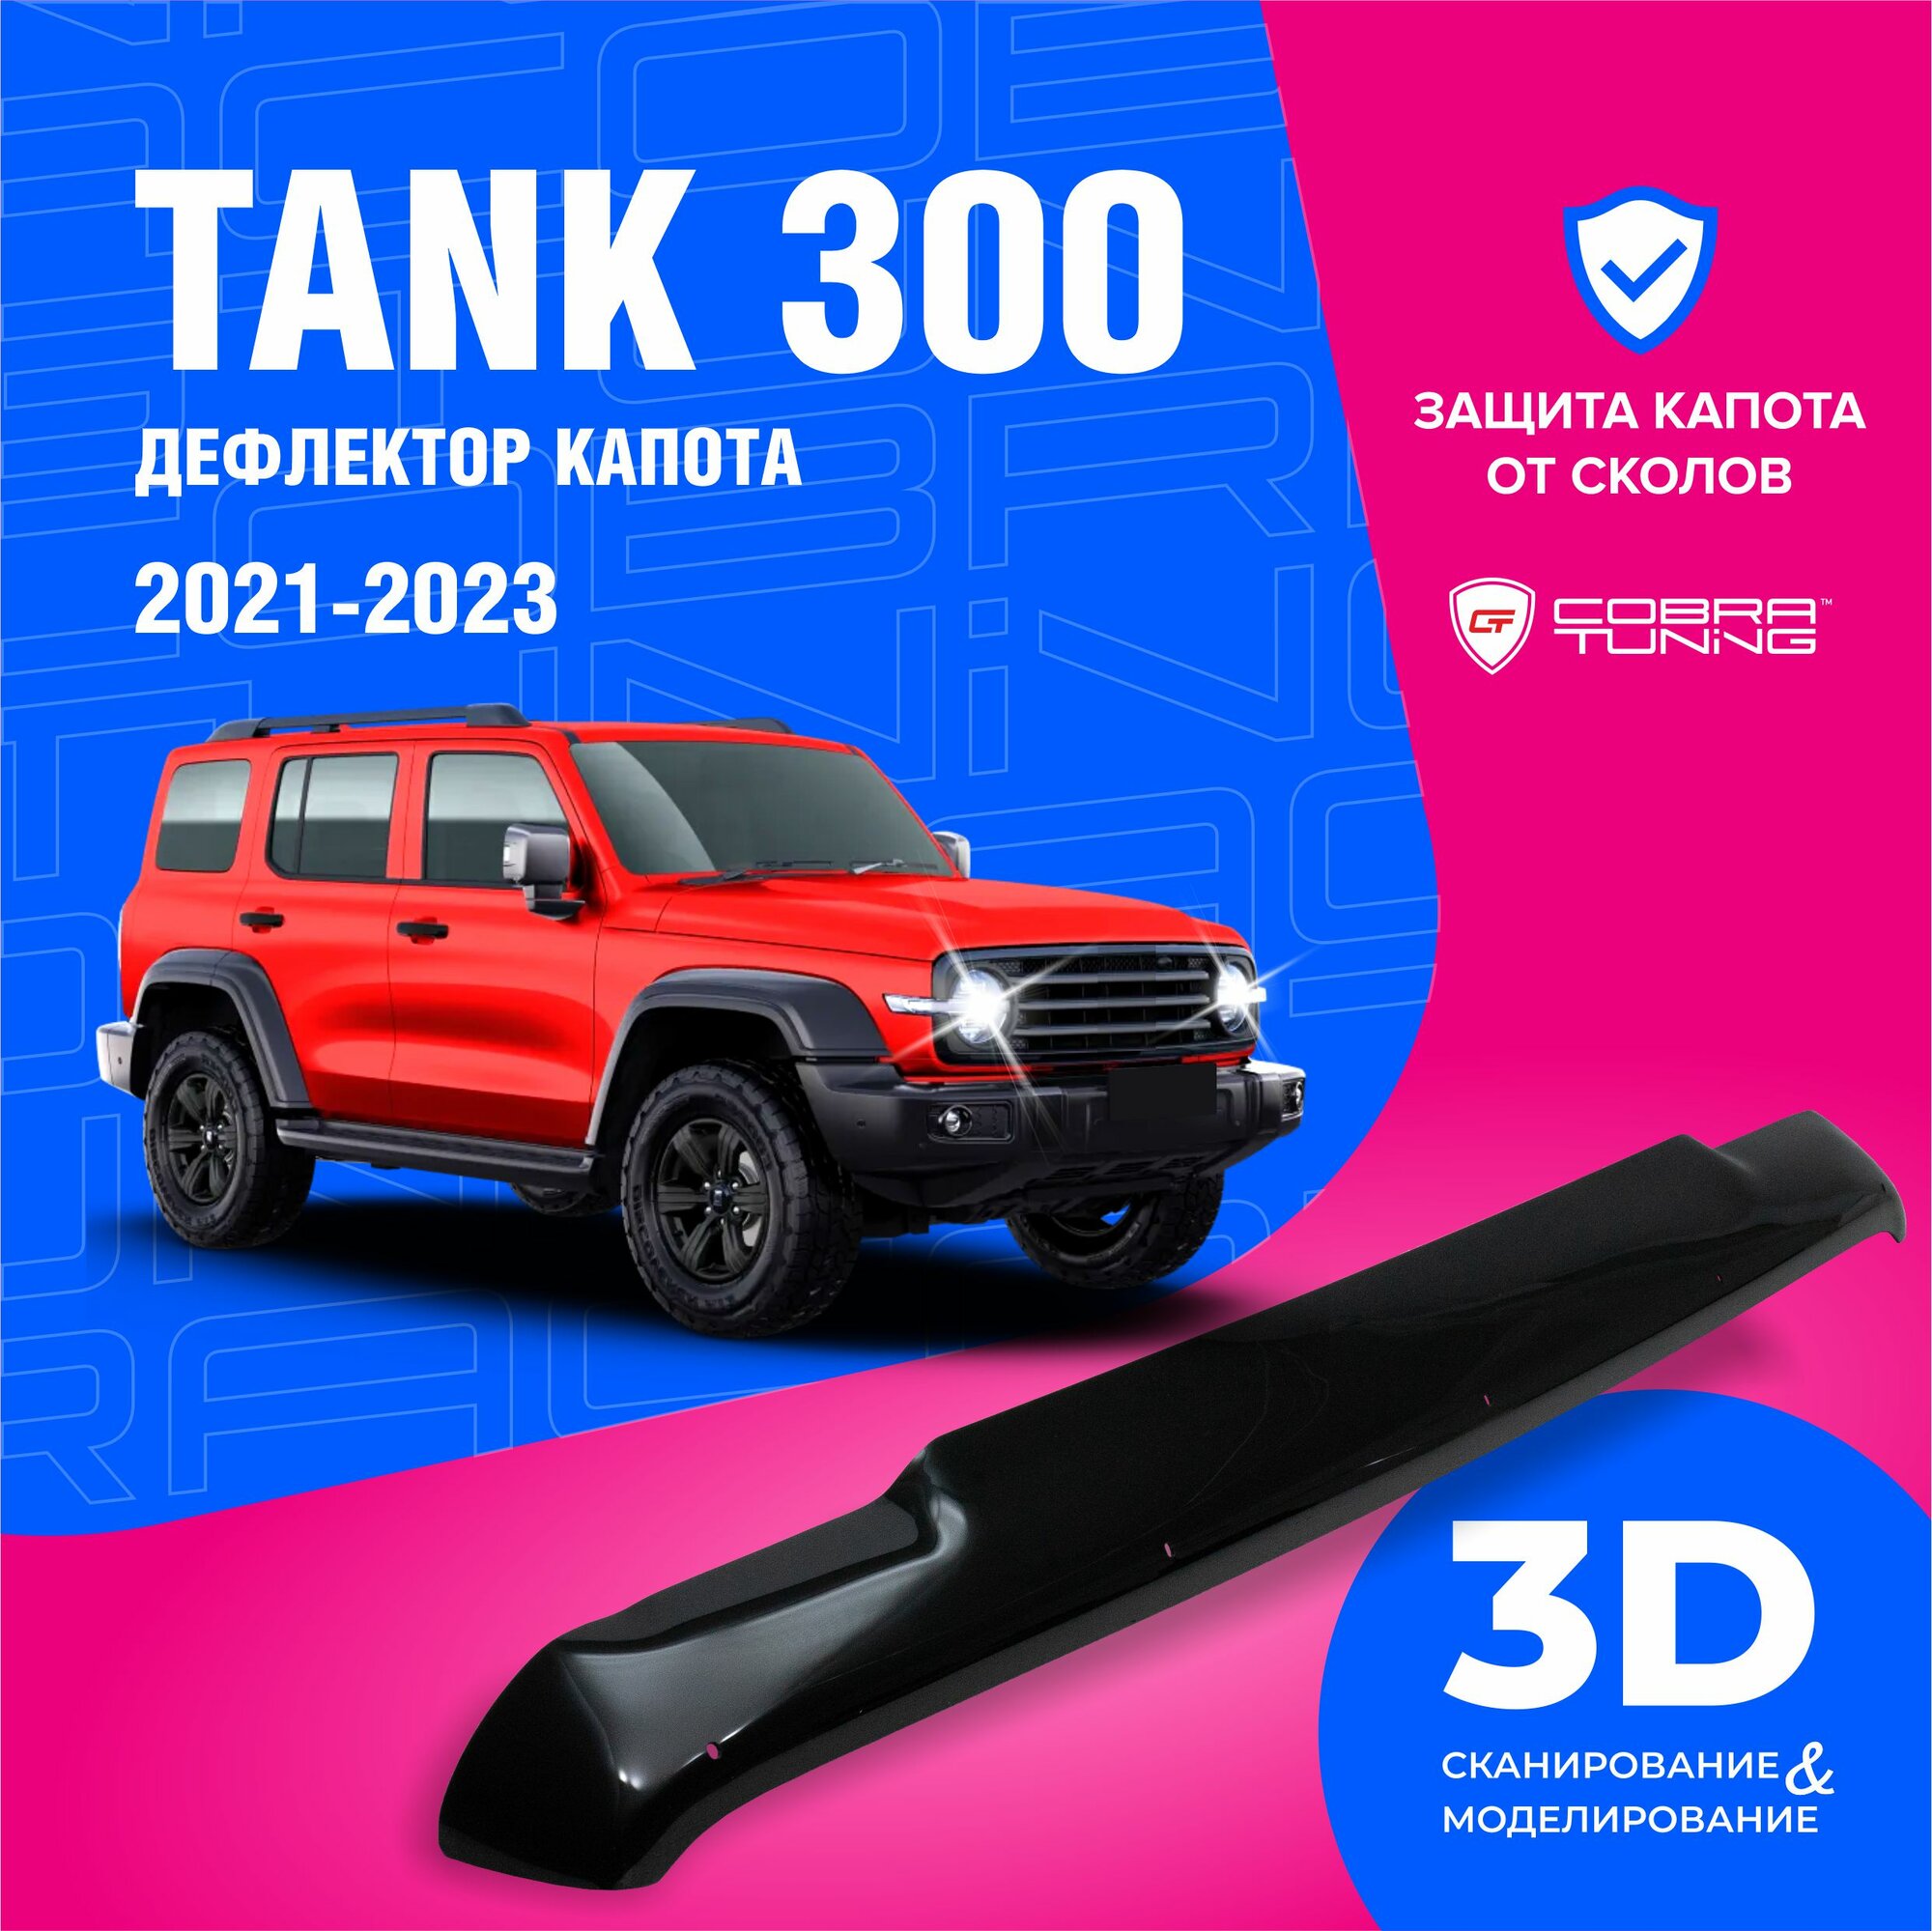 Дефлекторы боковых окон для Tank 300 (Танк) 2021-2023 ветровики на двери автомобиля Cobra Tuning.